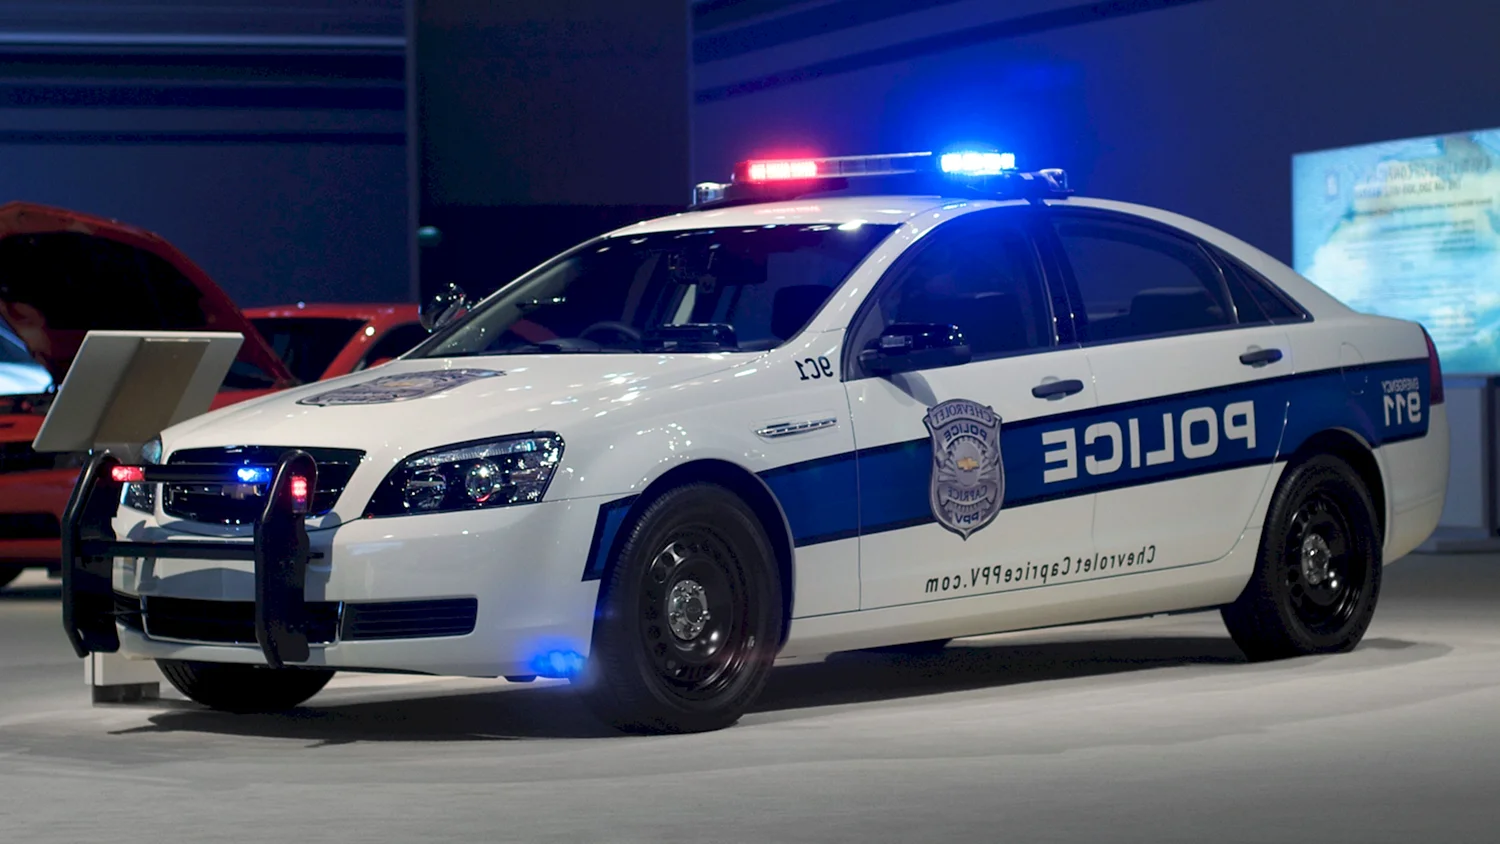 Chevrolet Caprice 2013 Police